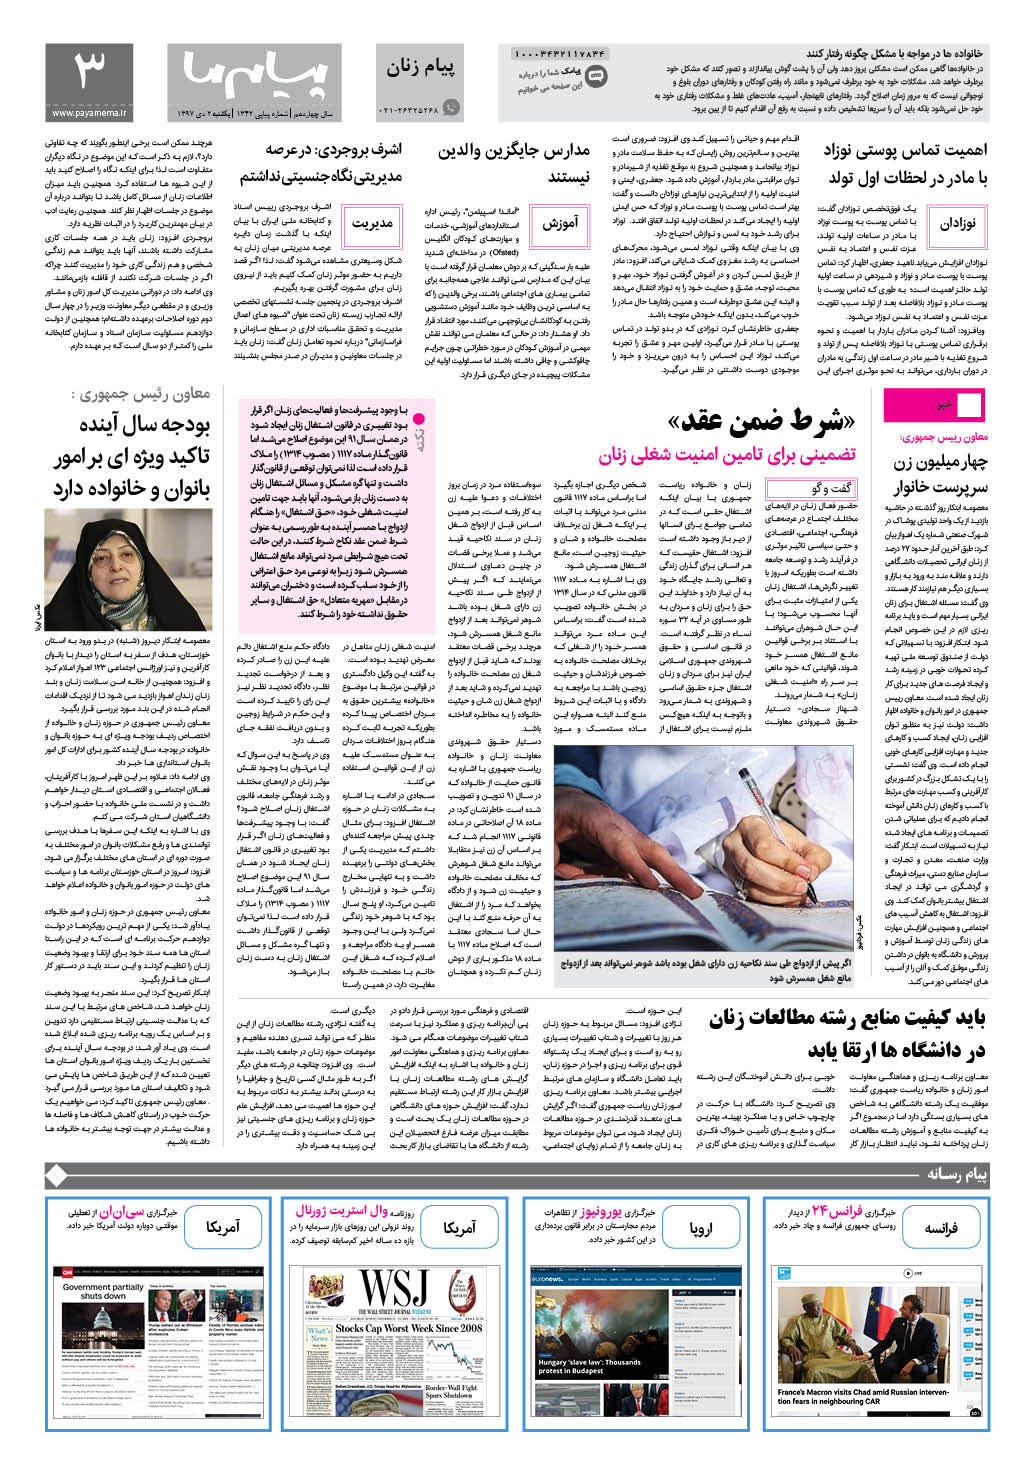 صفحه پیام زنان شماره 1342 روزنامه پیام ما